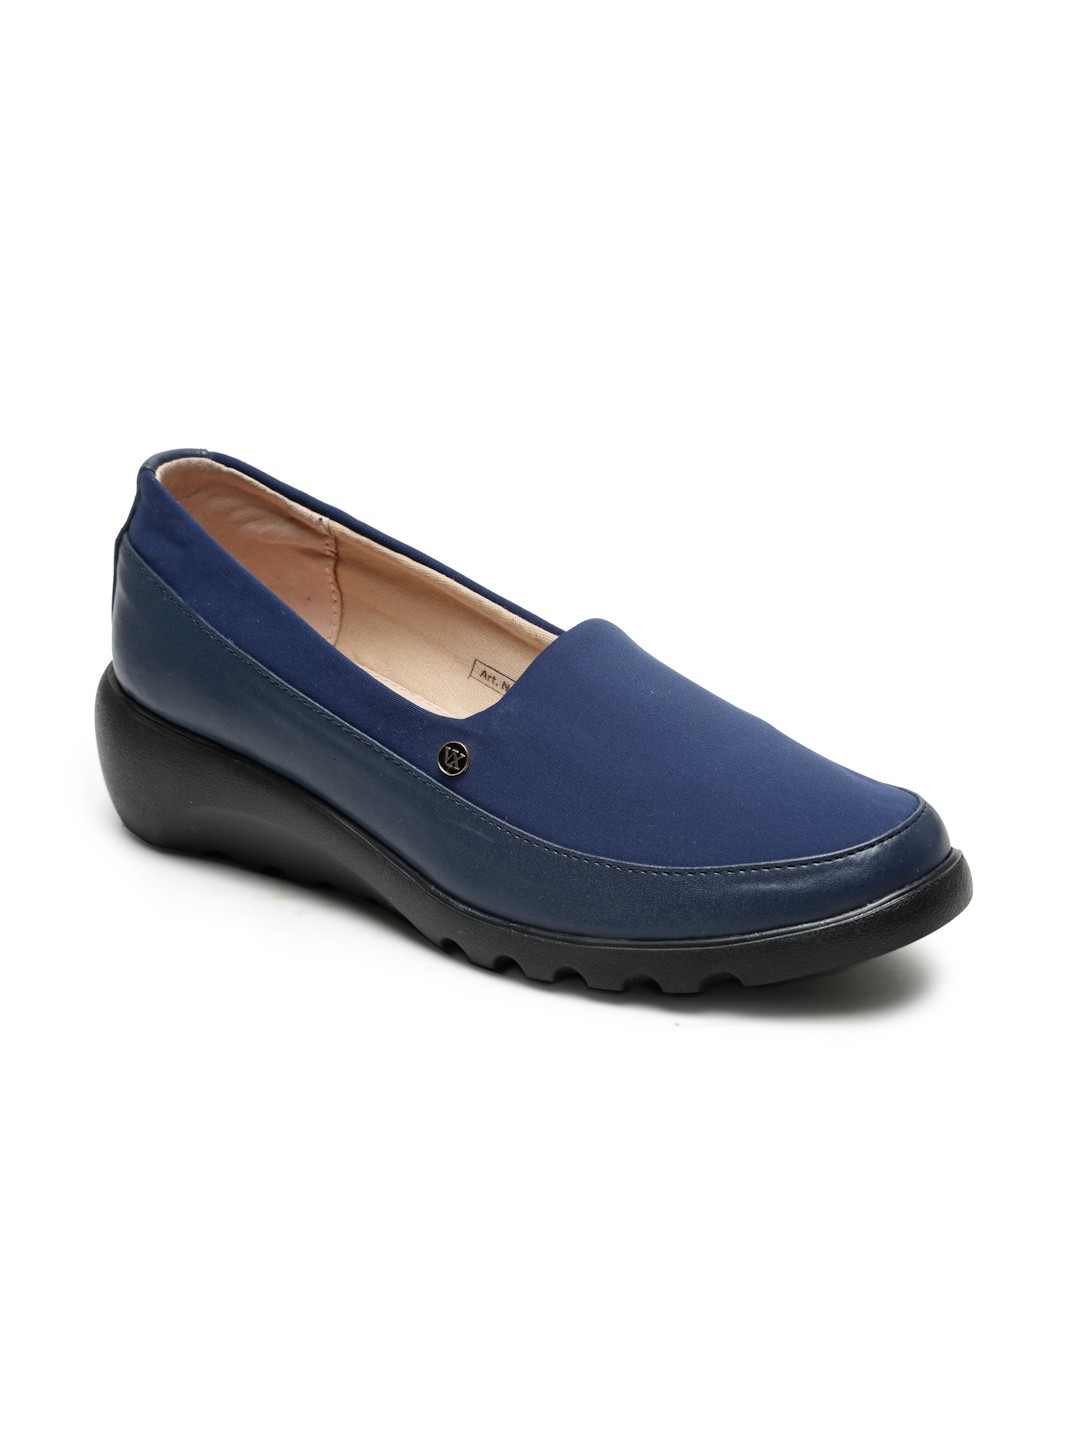 Buy Von Wellx Germany Comfort Women's Blue Casual Shoes Elsa Online in Salalah